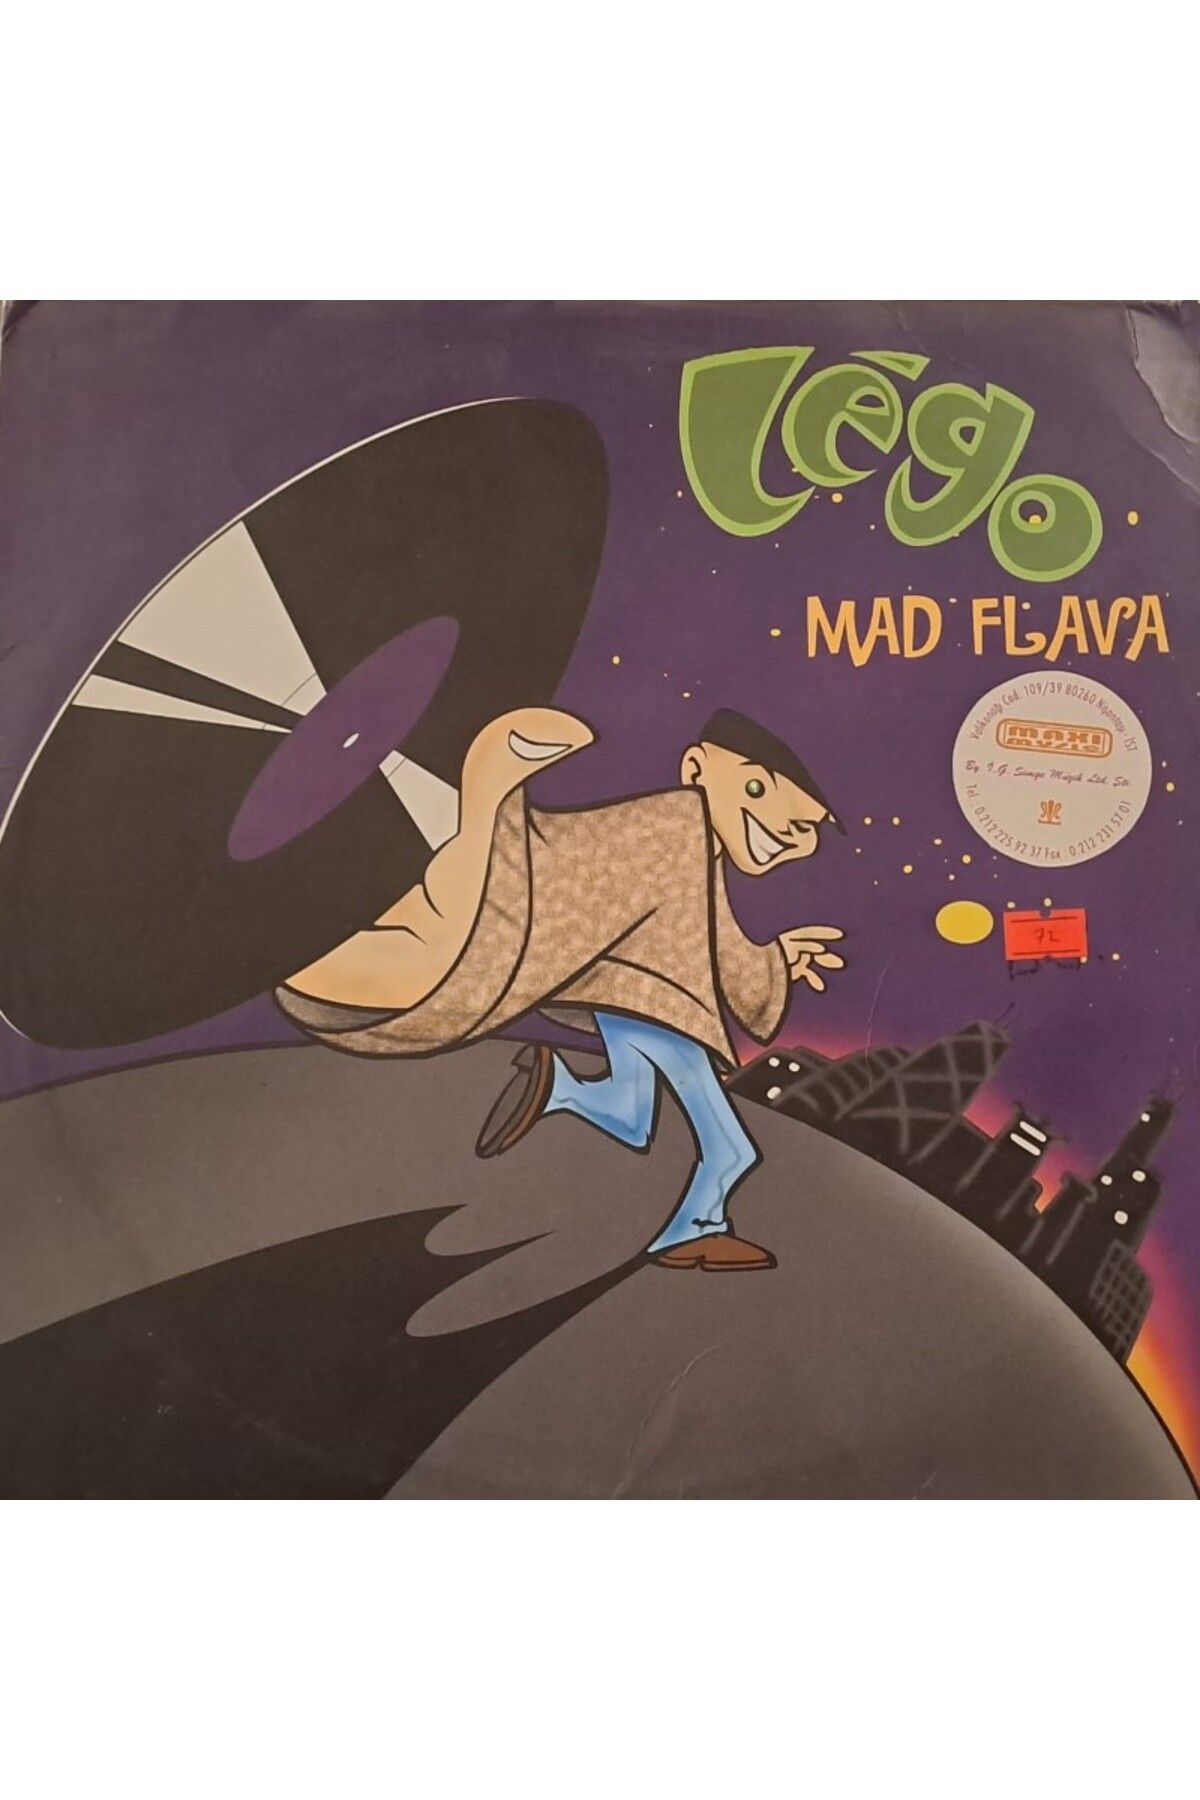 Vinylium Zone Légo – Mad Flava 2xVinyl Album Plak